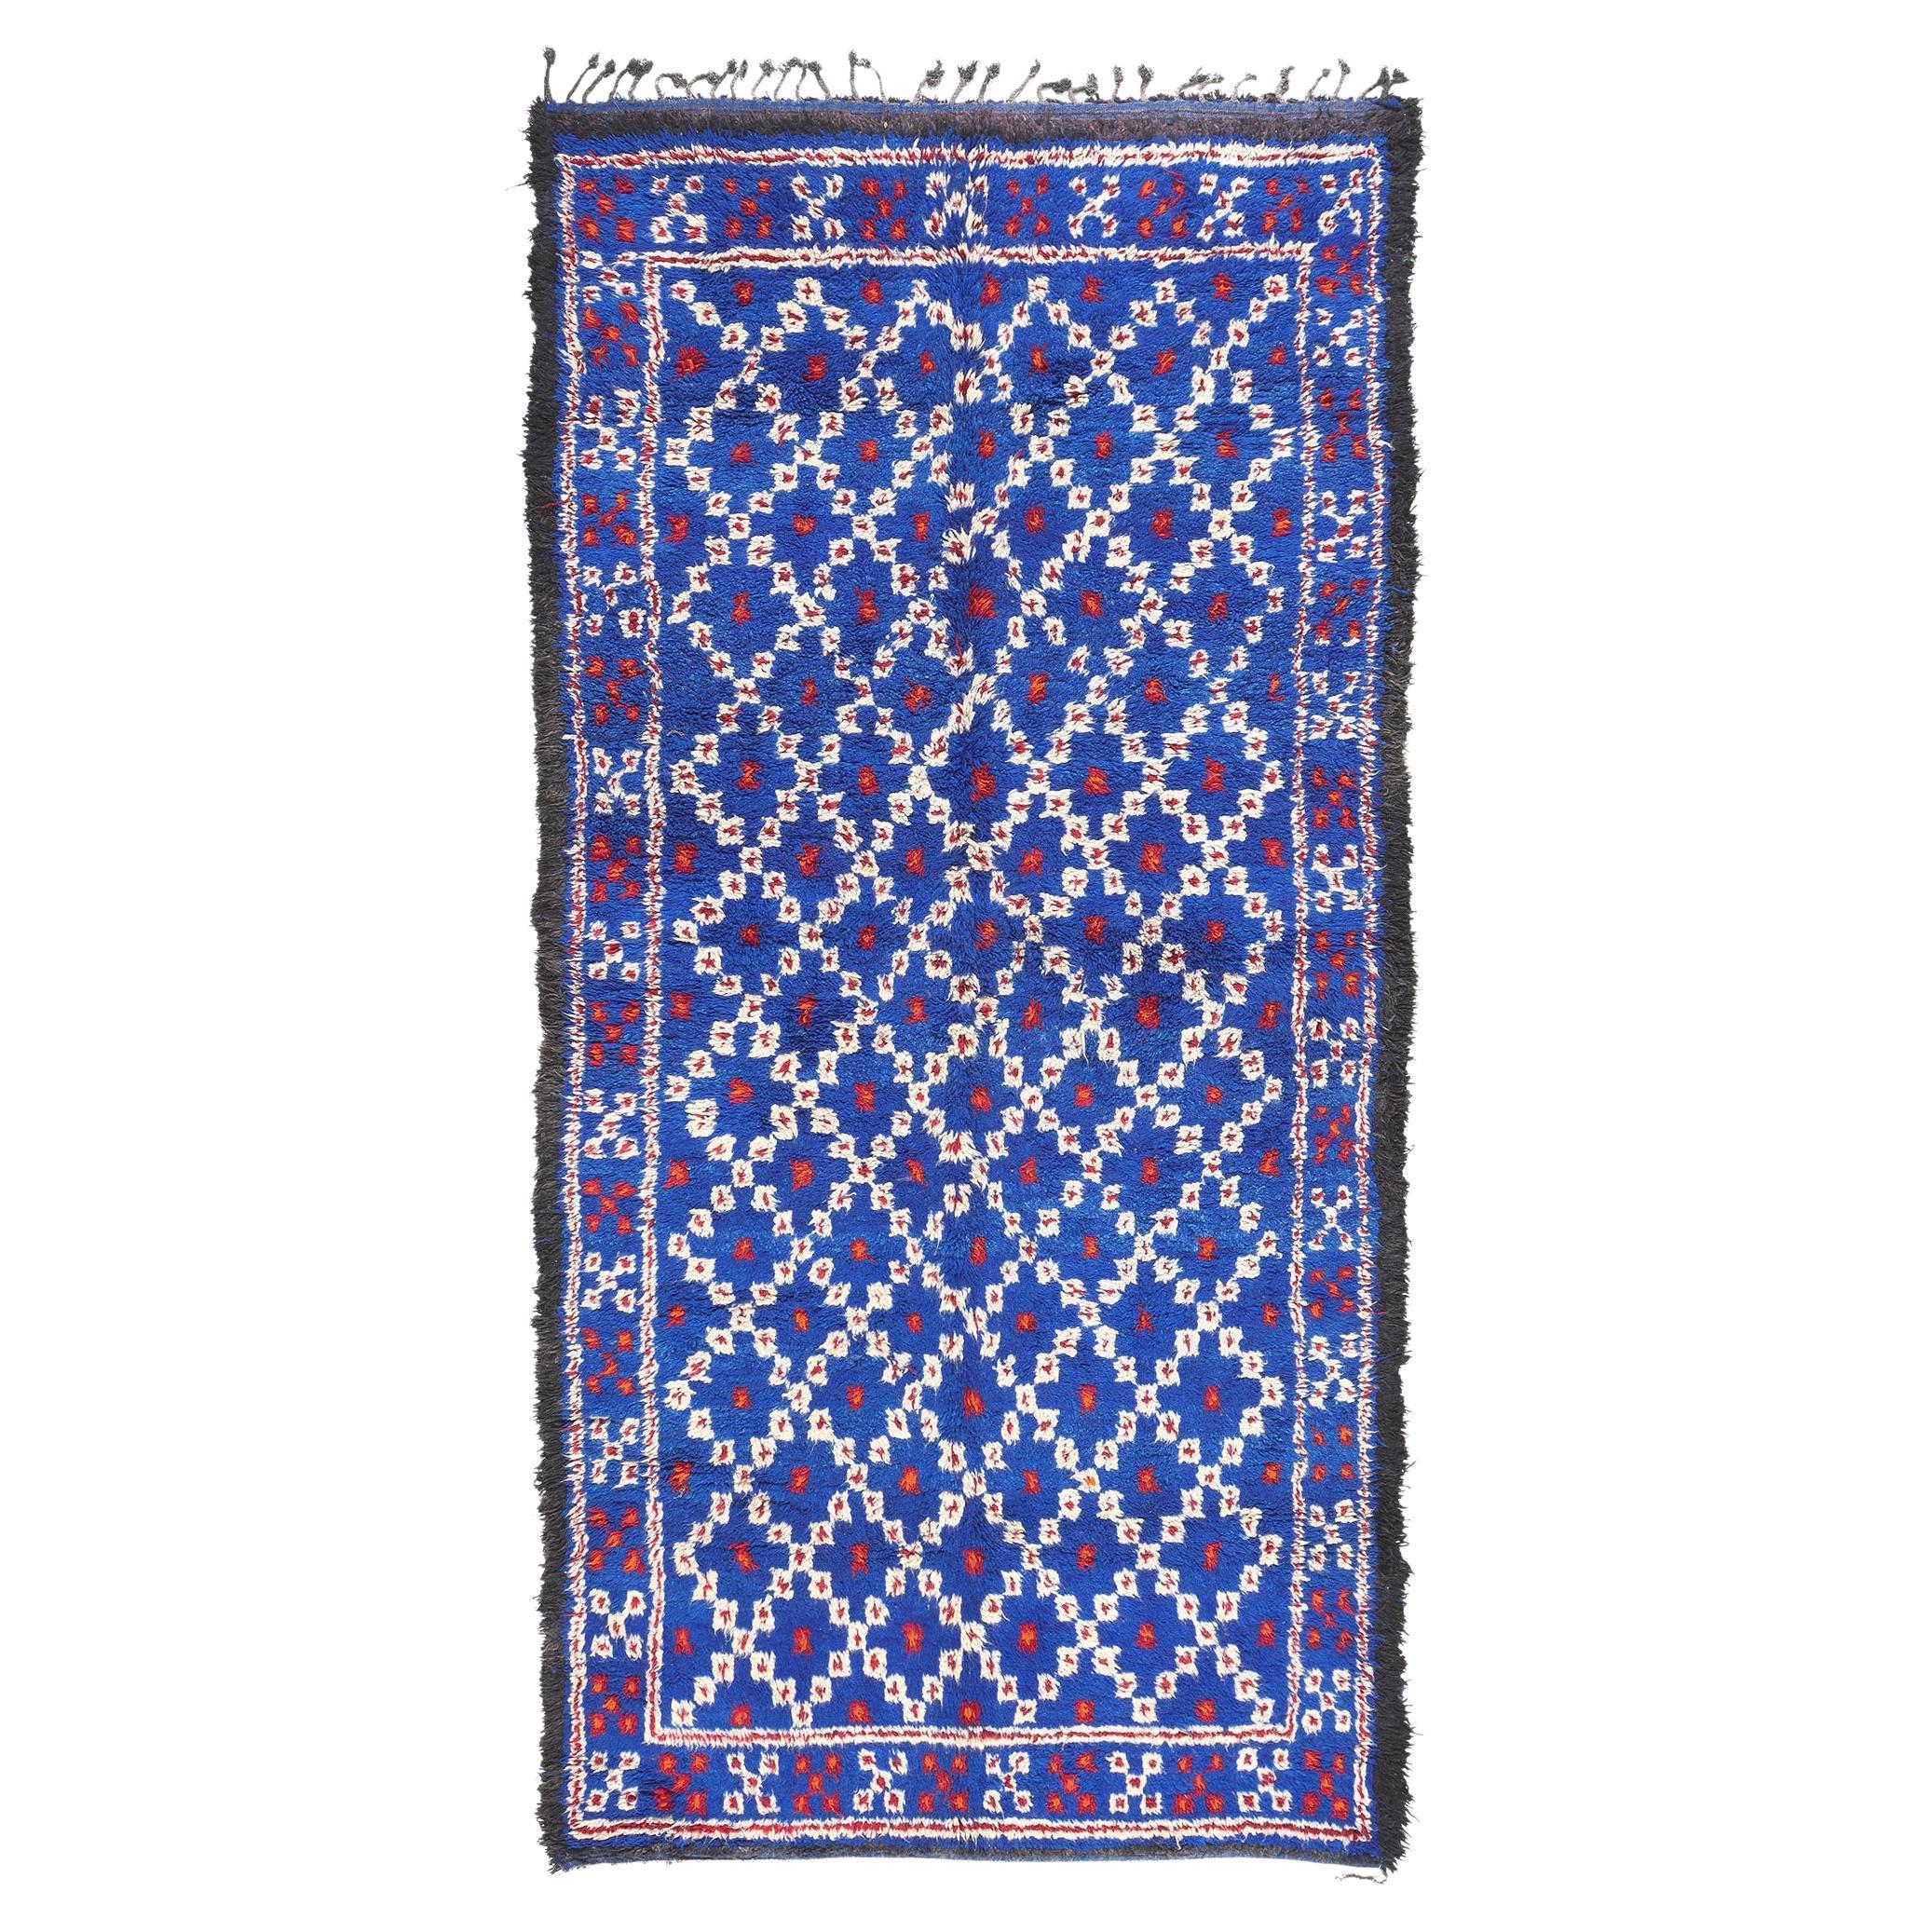 Vintage Blue Beni MGuild Moroccan Rug